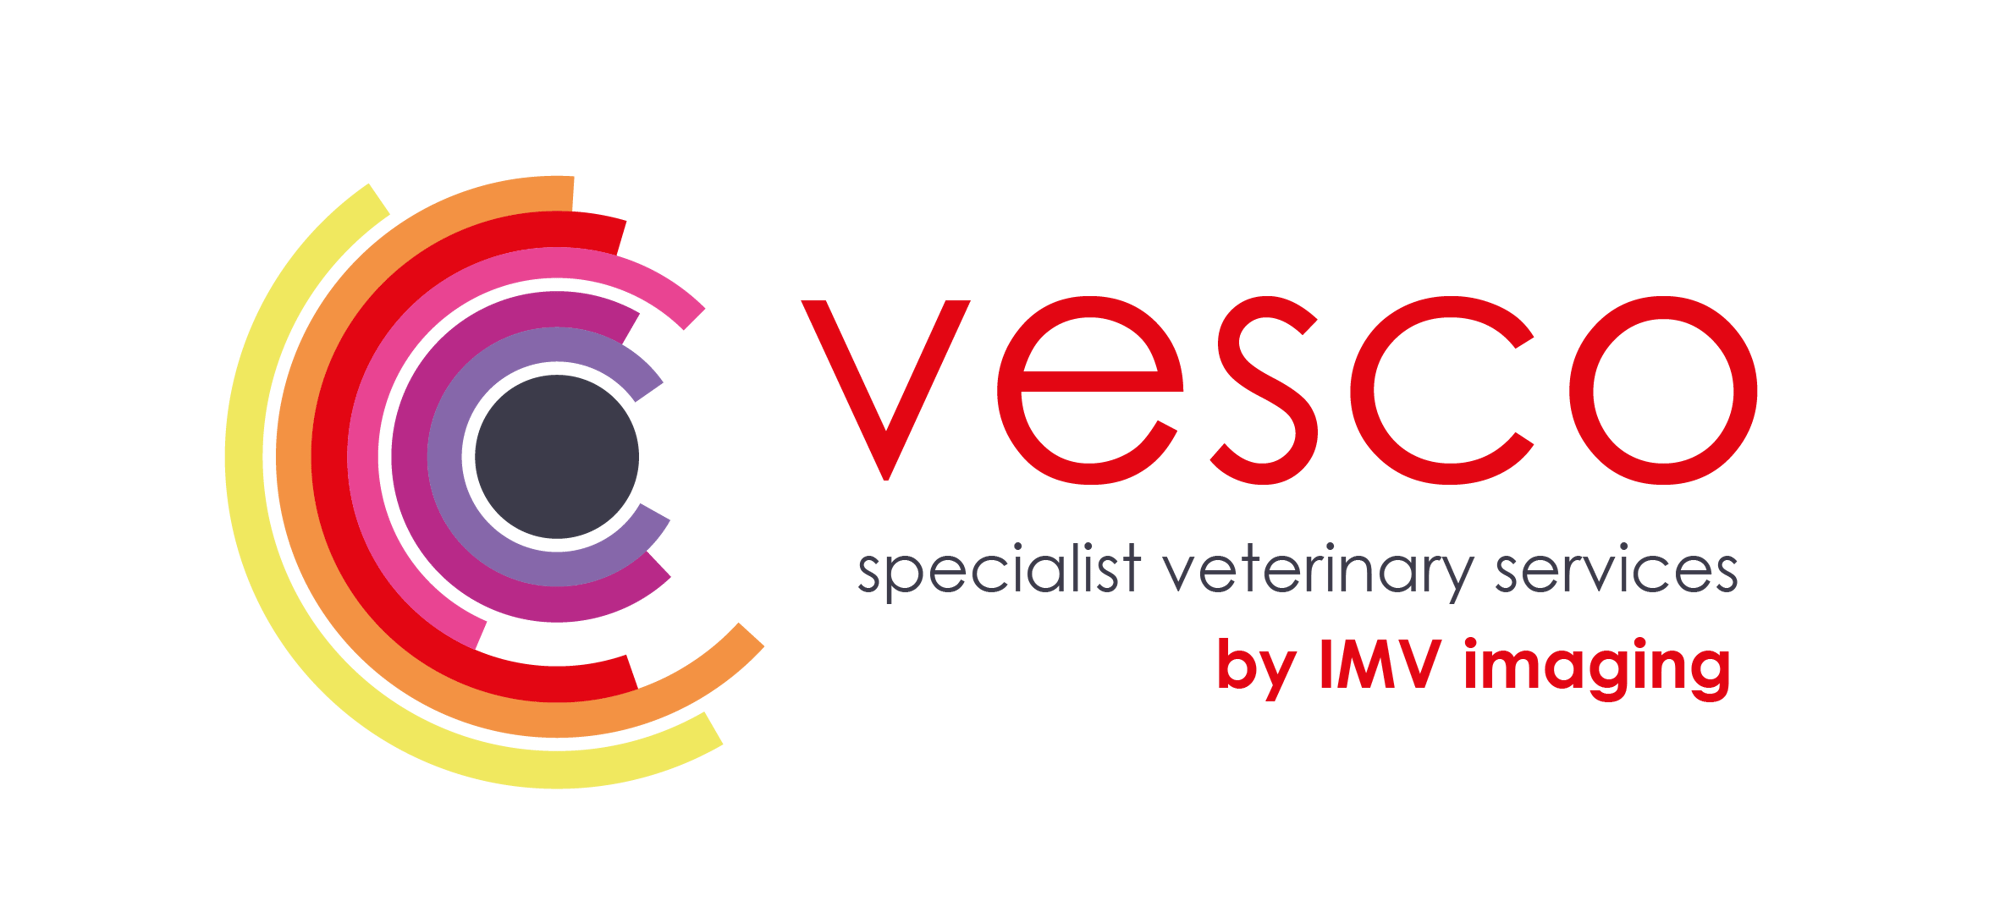 VESCO logo